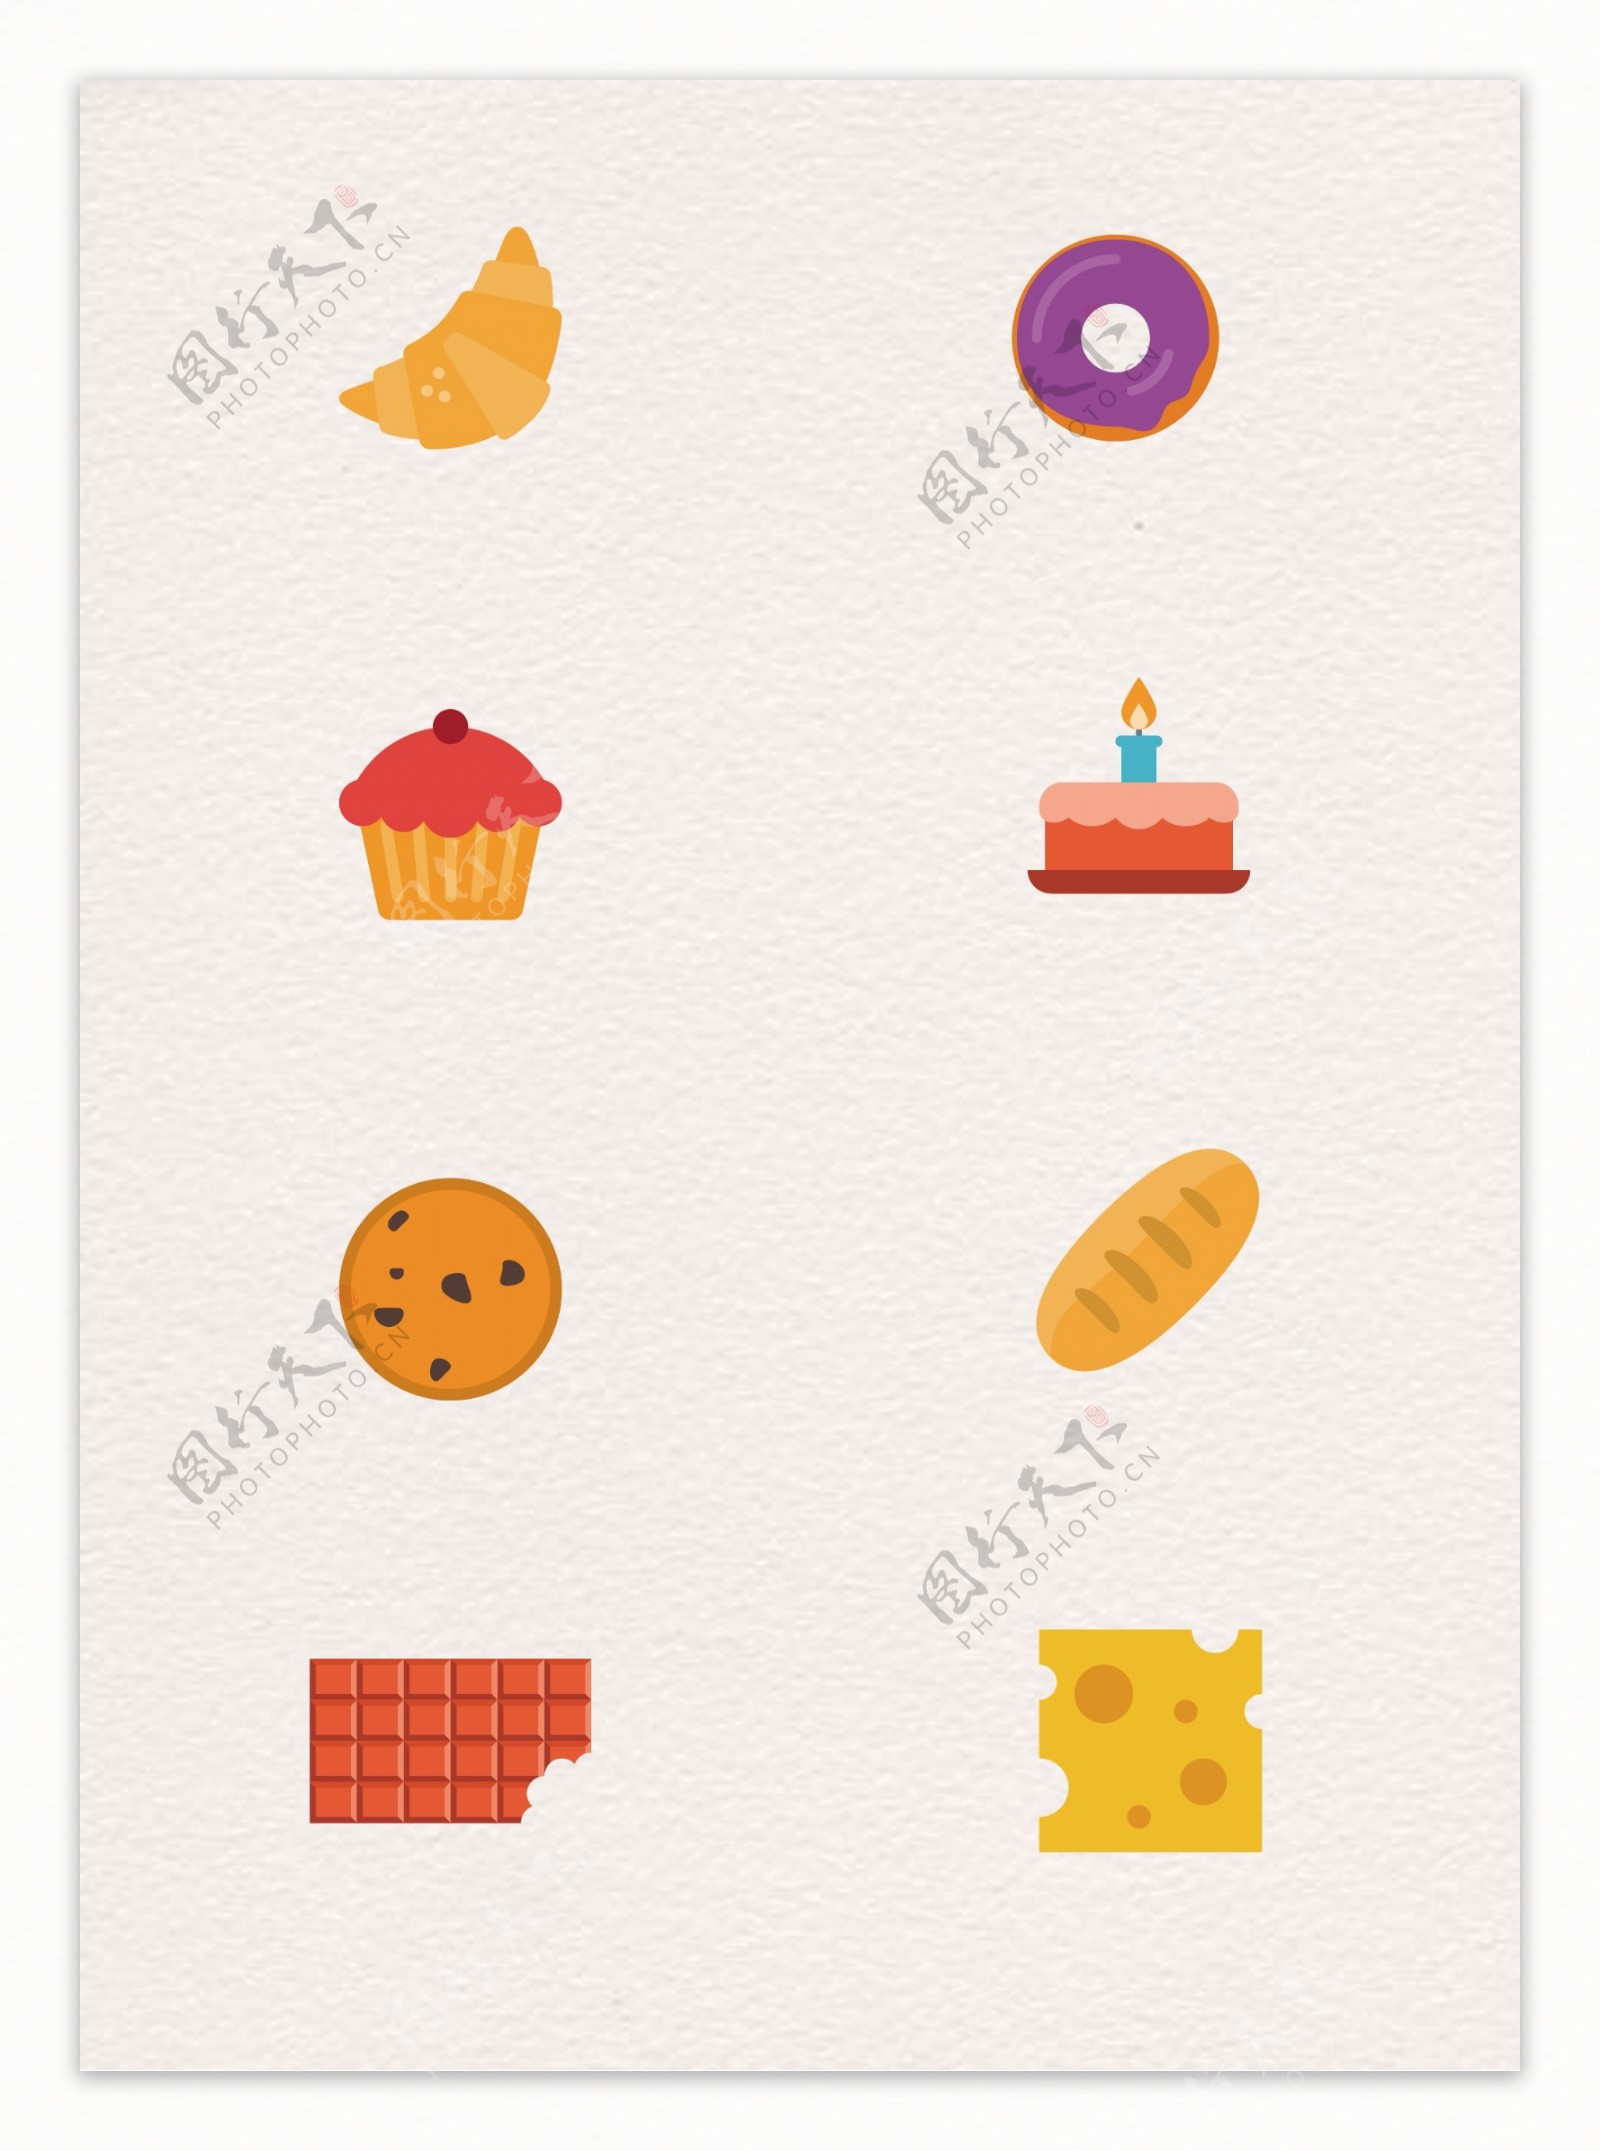 扁平化面包和蛋糕甜食图标矢量设计